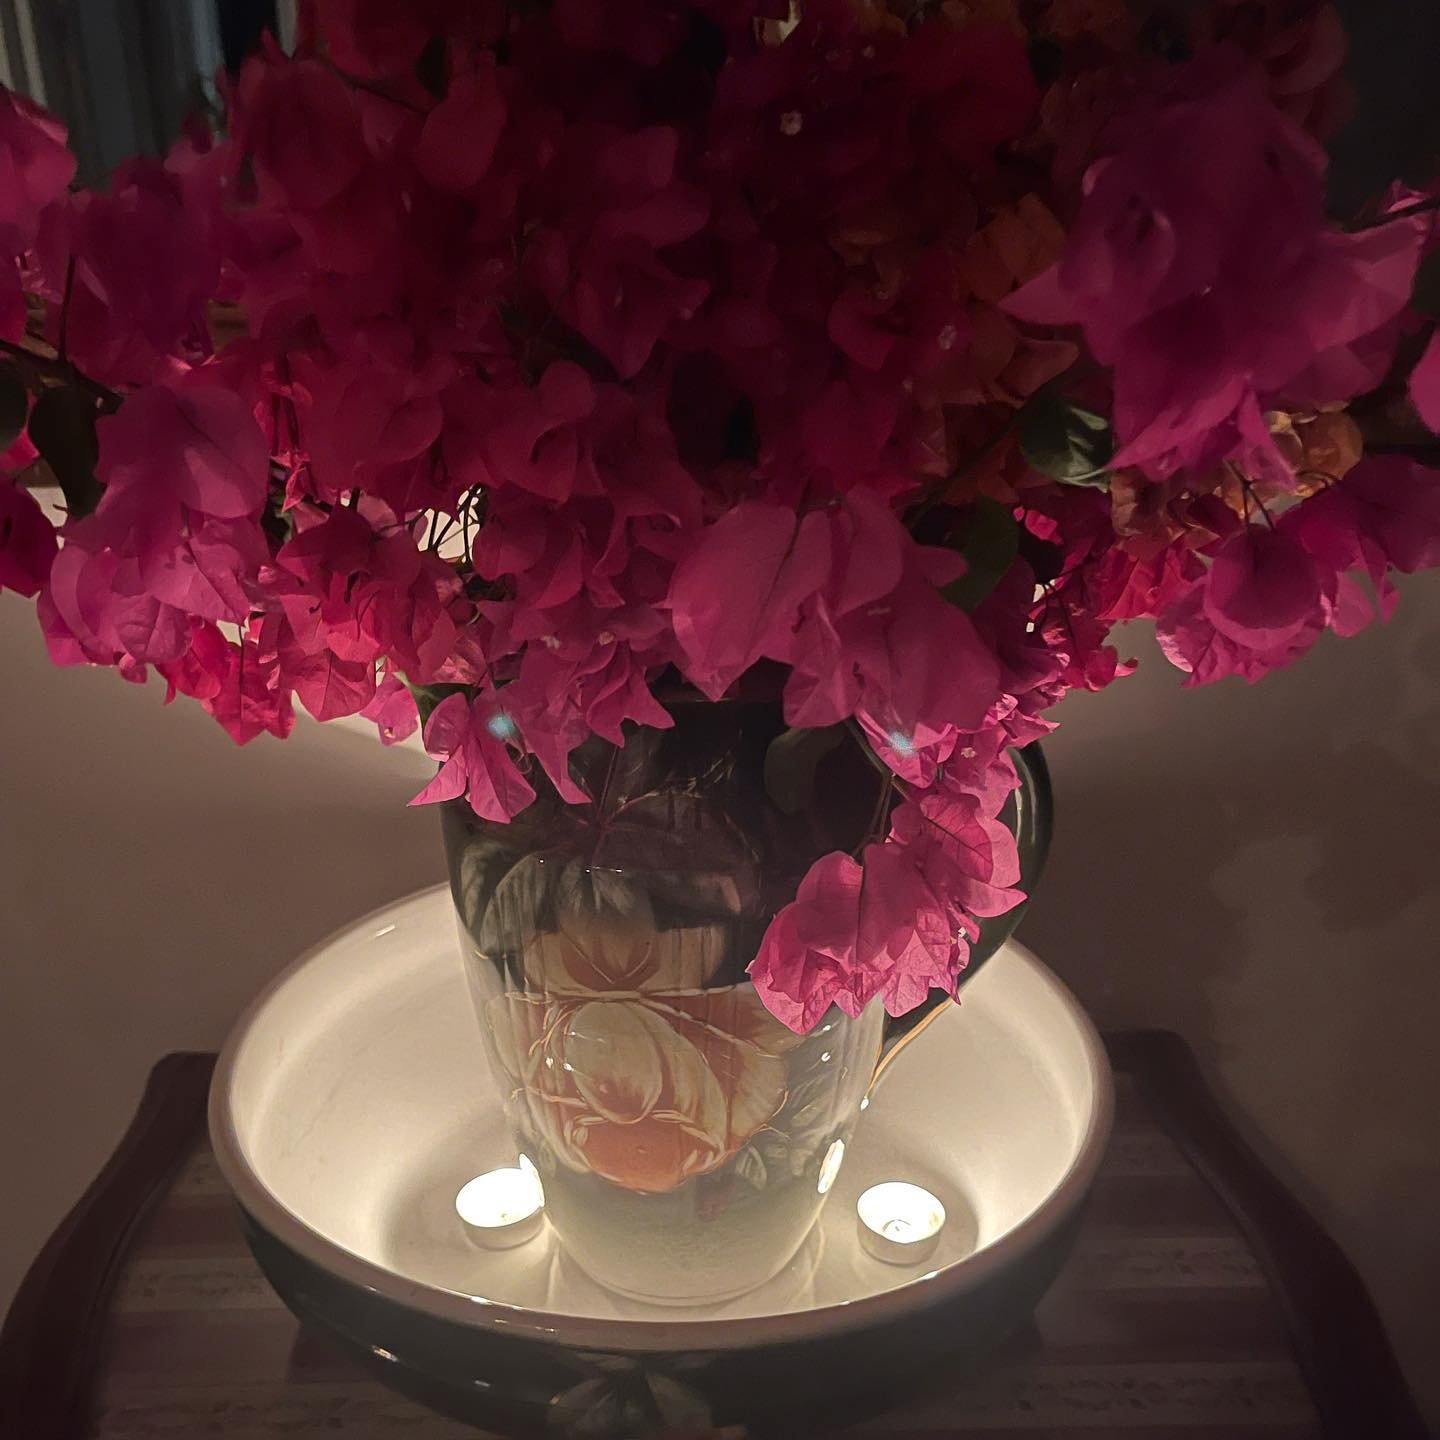 Τζένη Μπαλατσινού: Τα κειμήλια και τα ιδιαίτερα διακοσμητικά που κοσμούν το σαλόνι της θα σε εντυπωσιάσουν